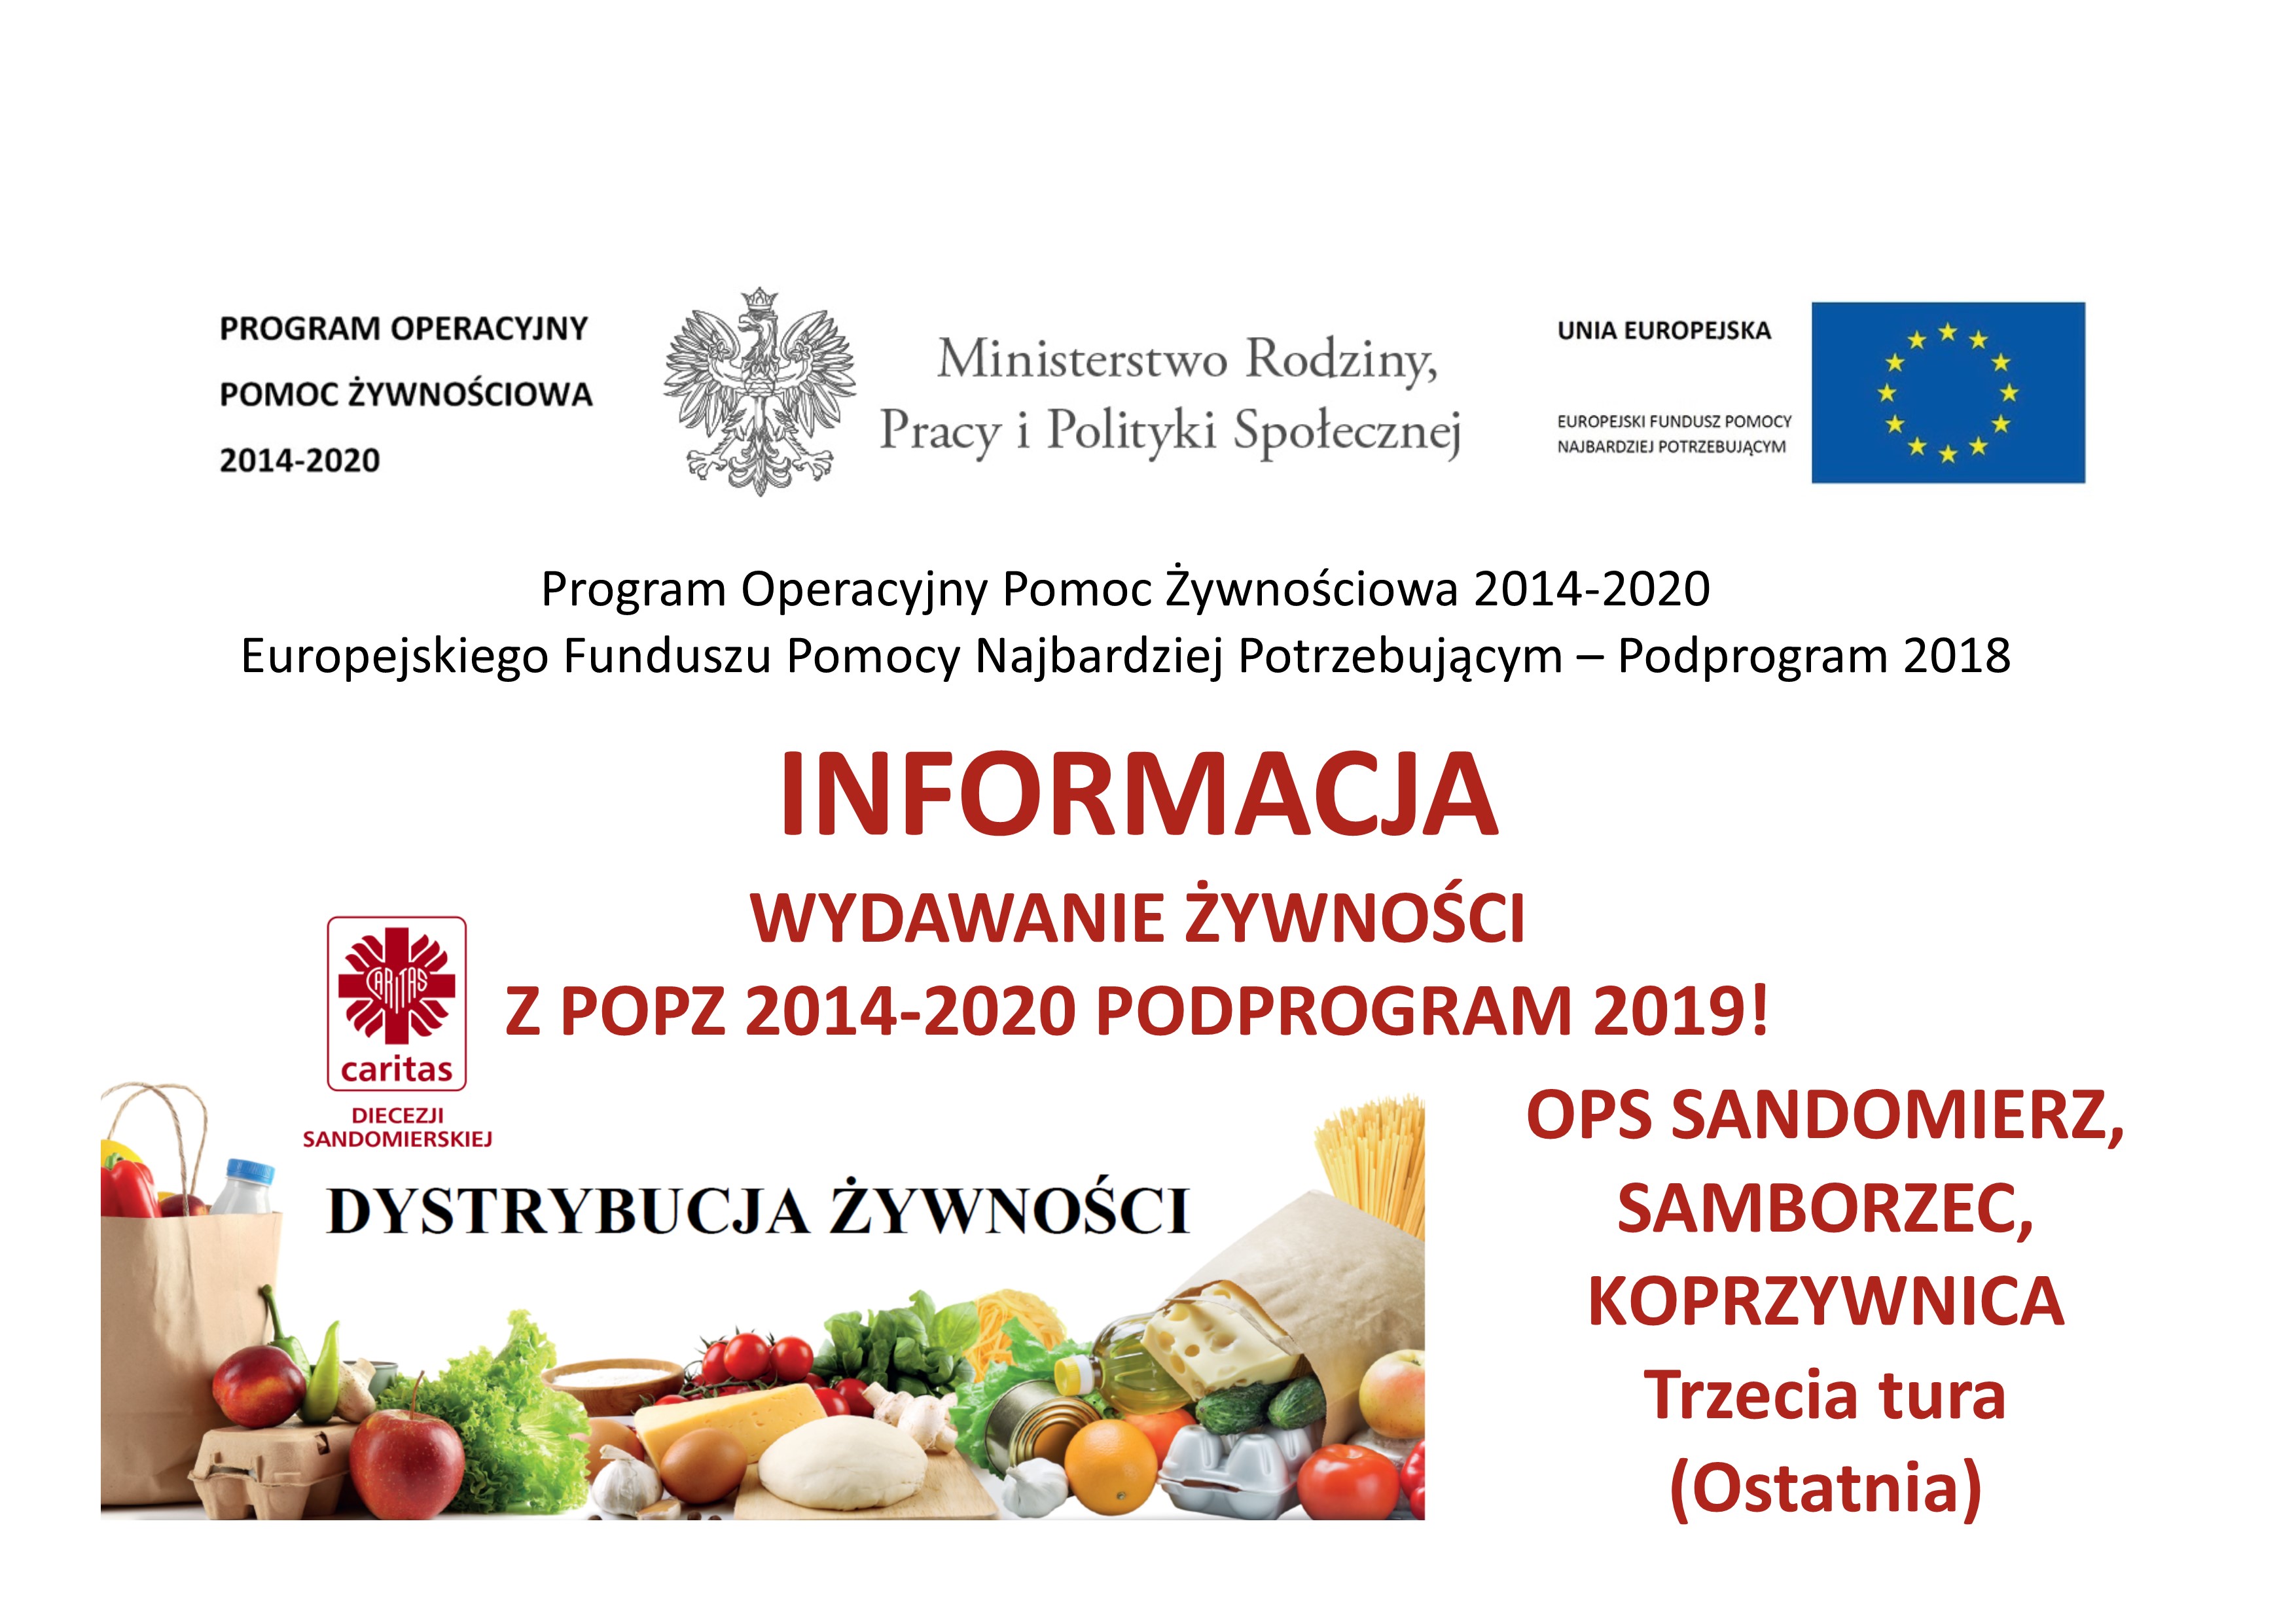 Wydawanie żywności dla osób z OPS w Sandomierzu, Samborcu i Koprzywnicy